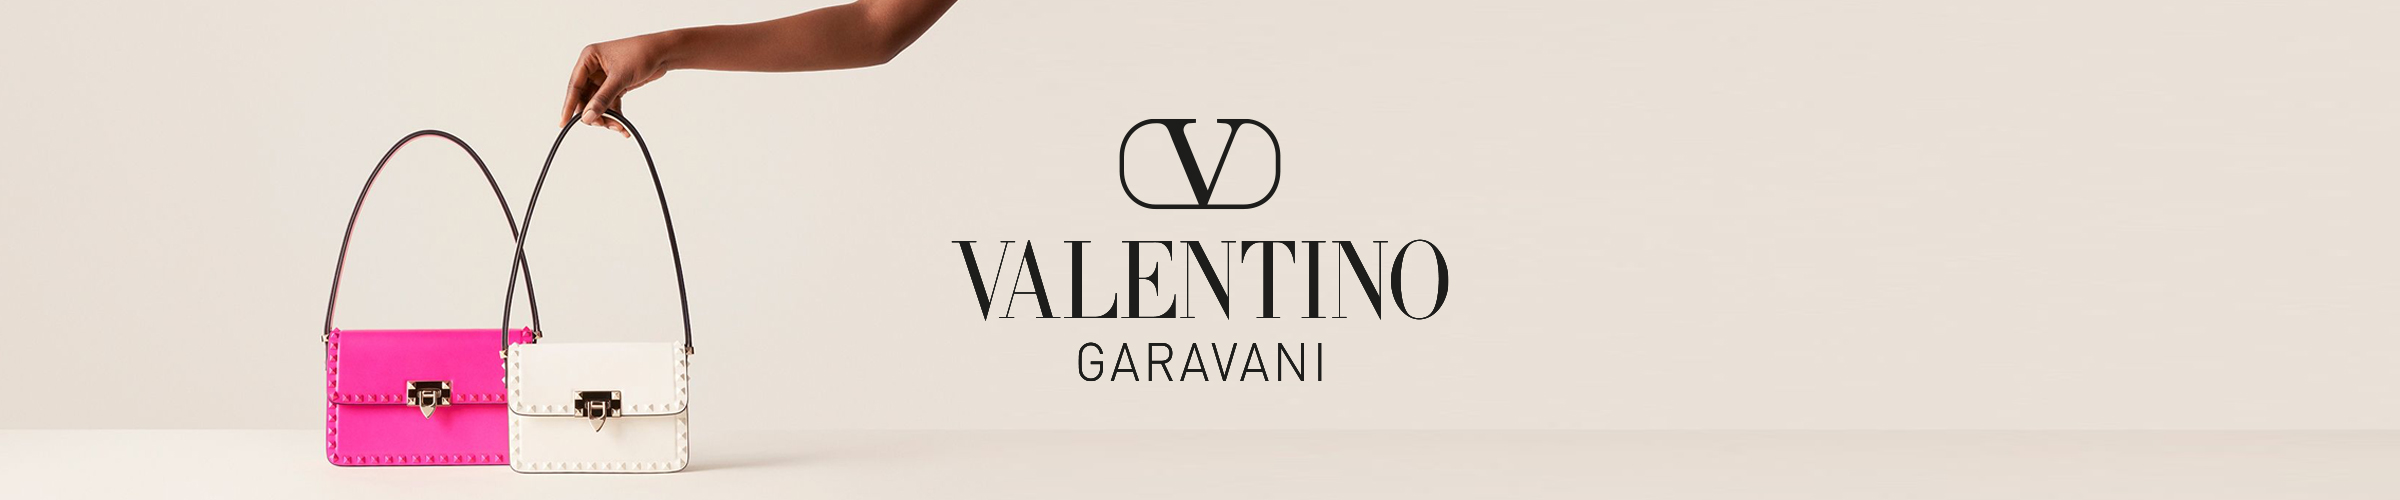 valentino-garavani-banner